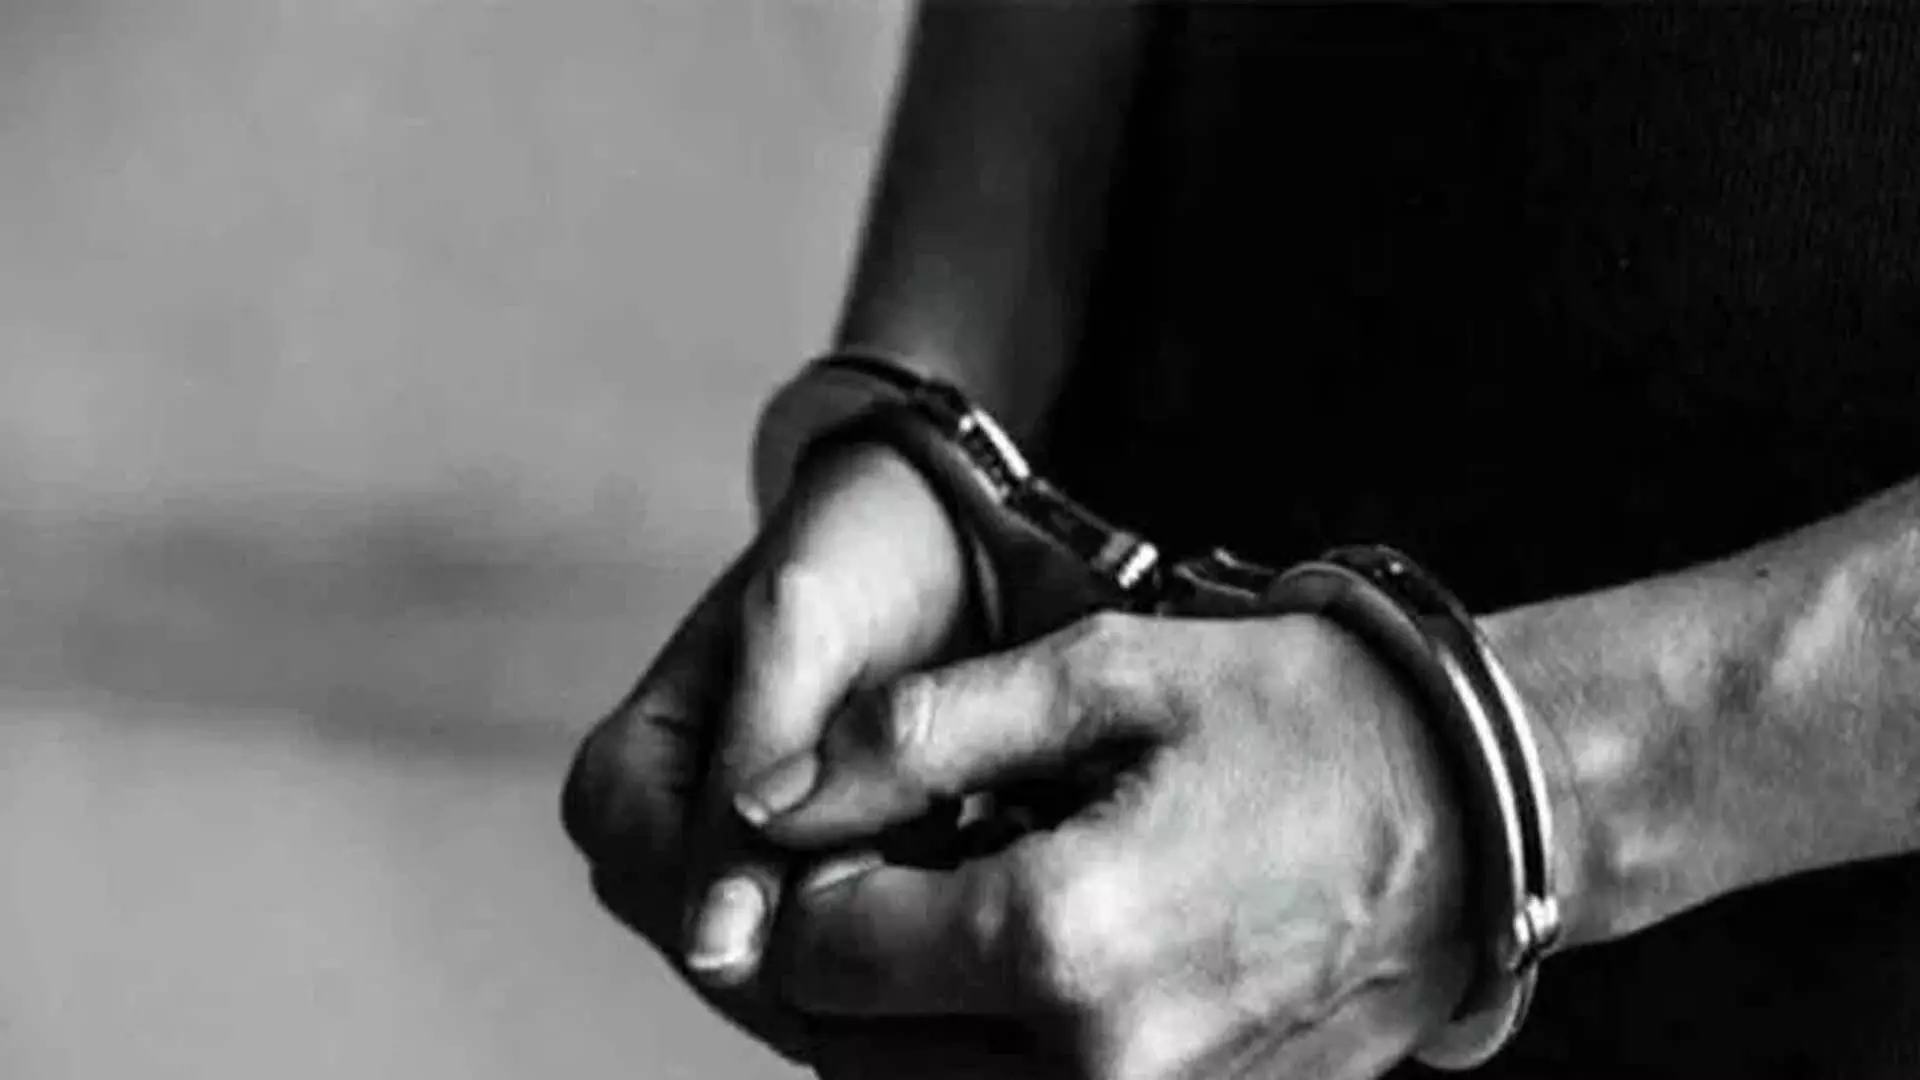 हैदराबाद: सामूहिक बलात्कार का मामला सुलझा, किशोर समेत दो गिरफ्तार